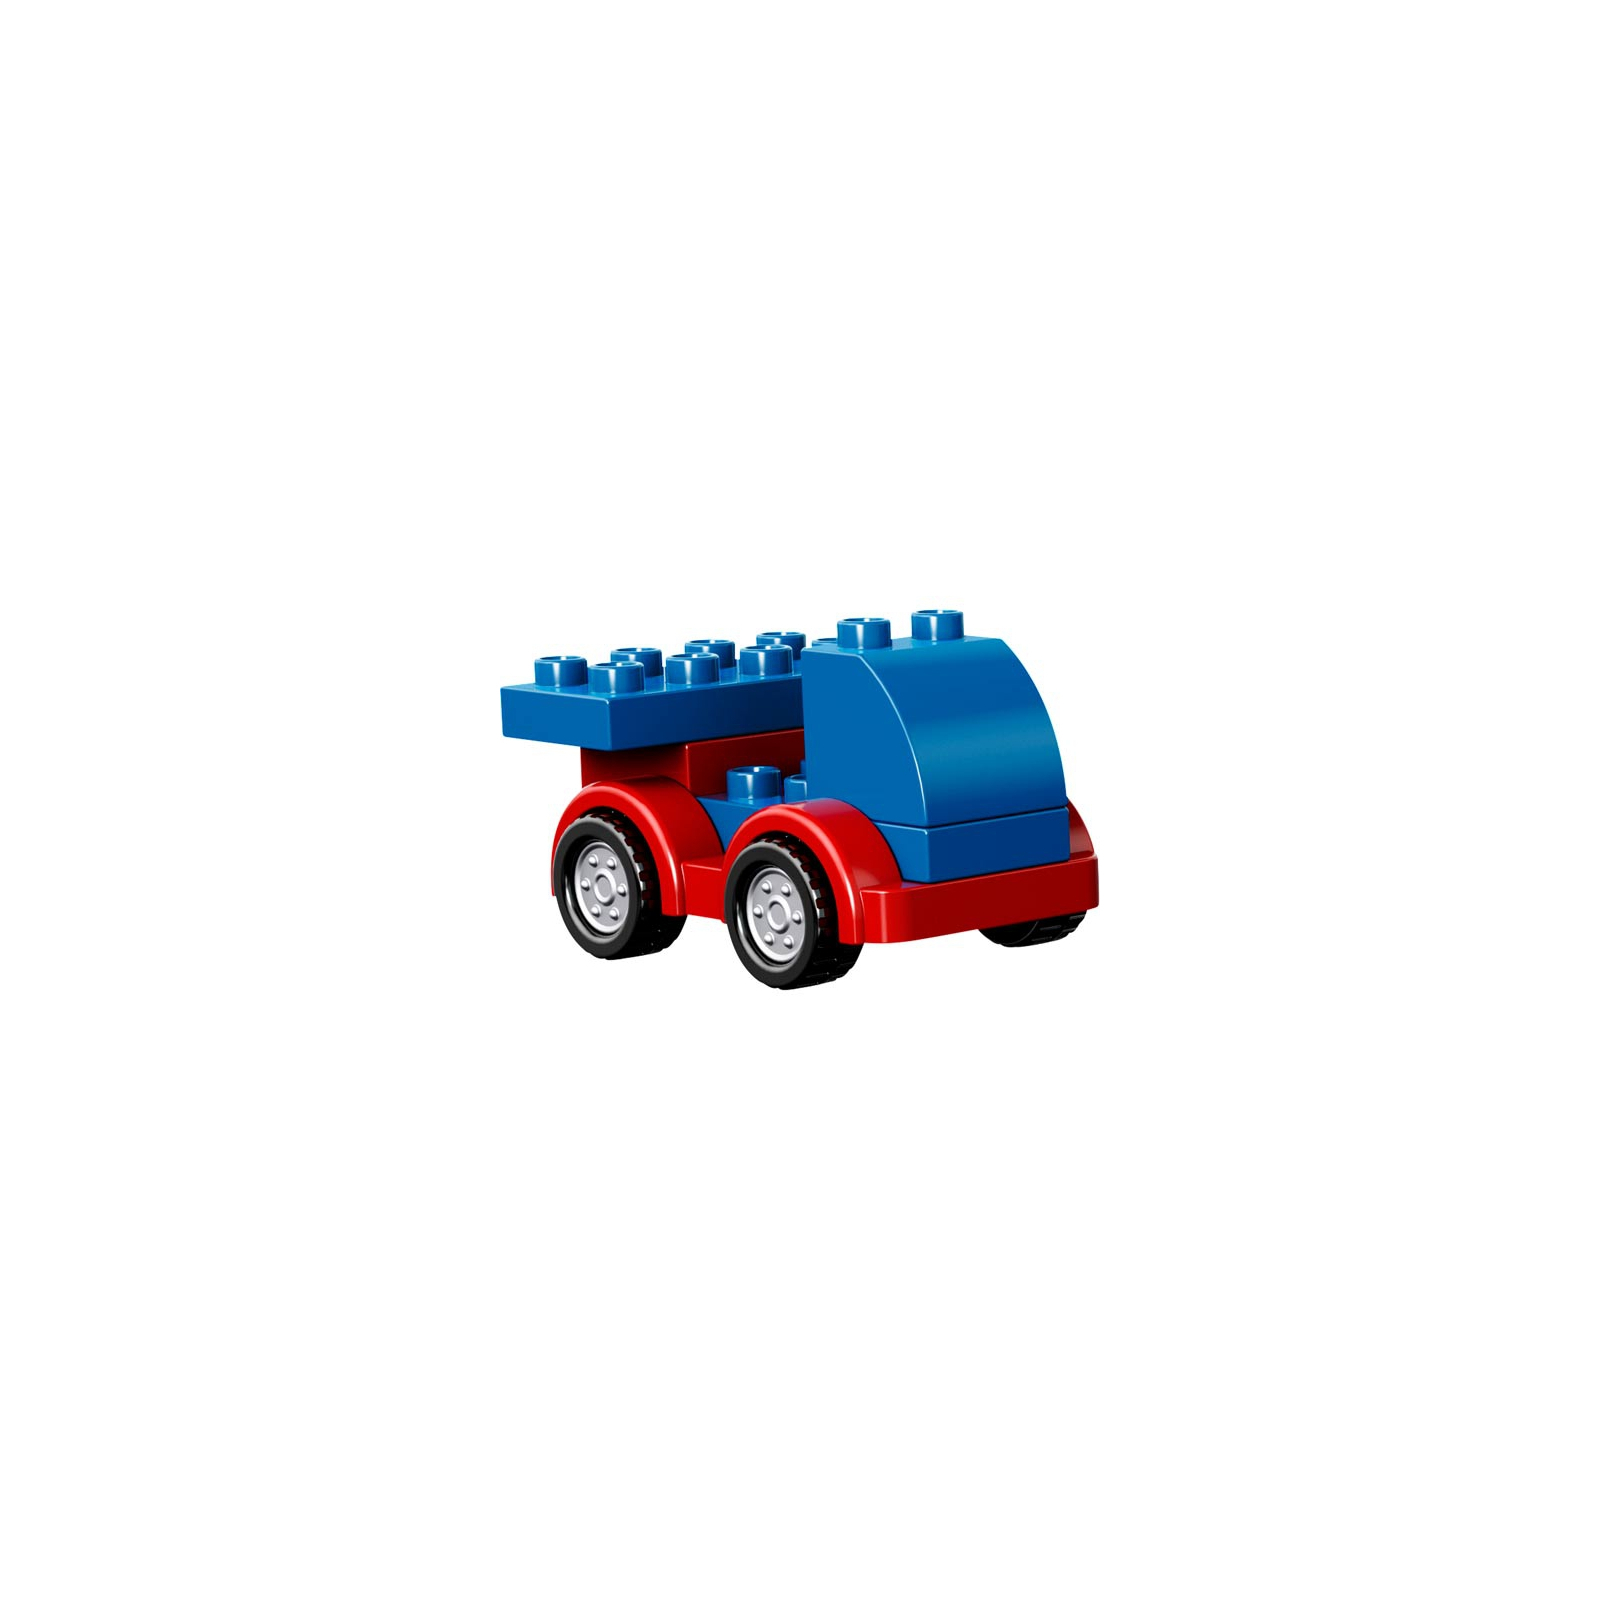 Конструктор LEGO Duplo Игровая коробка Делюкс (10580) изображение 7